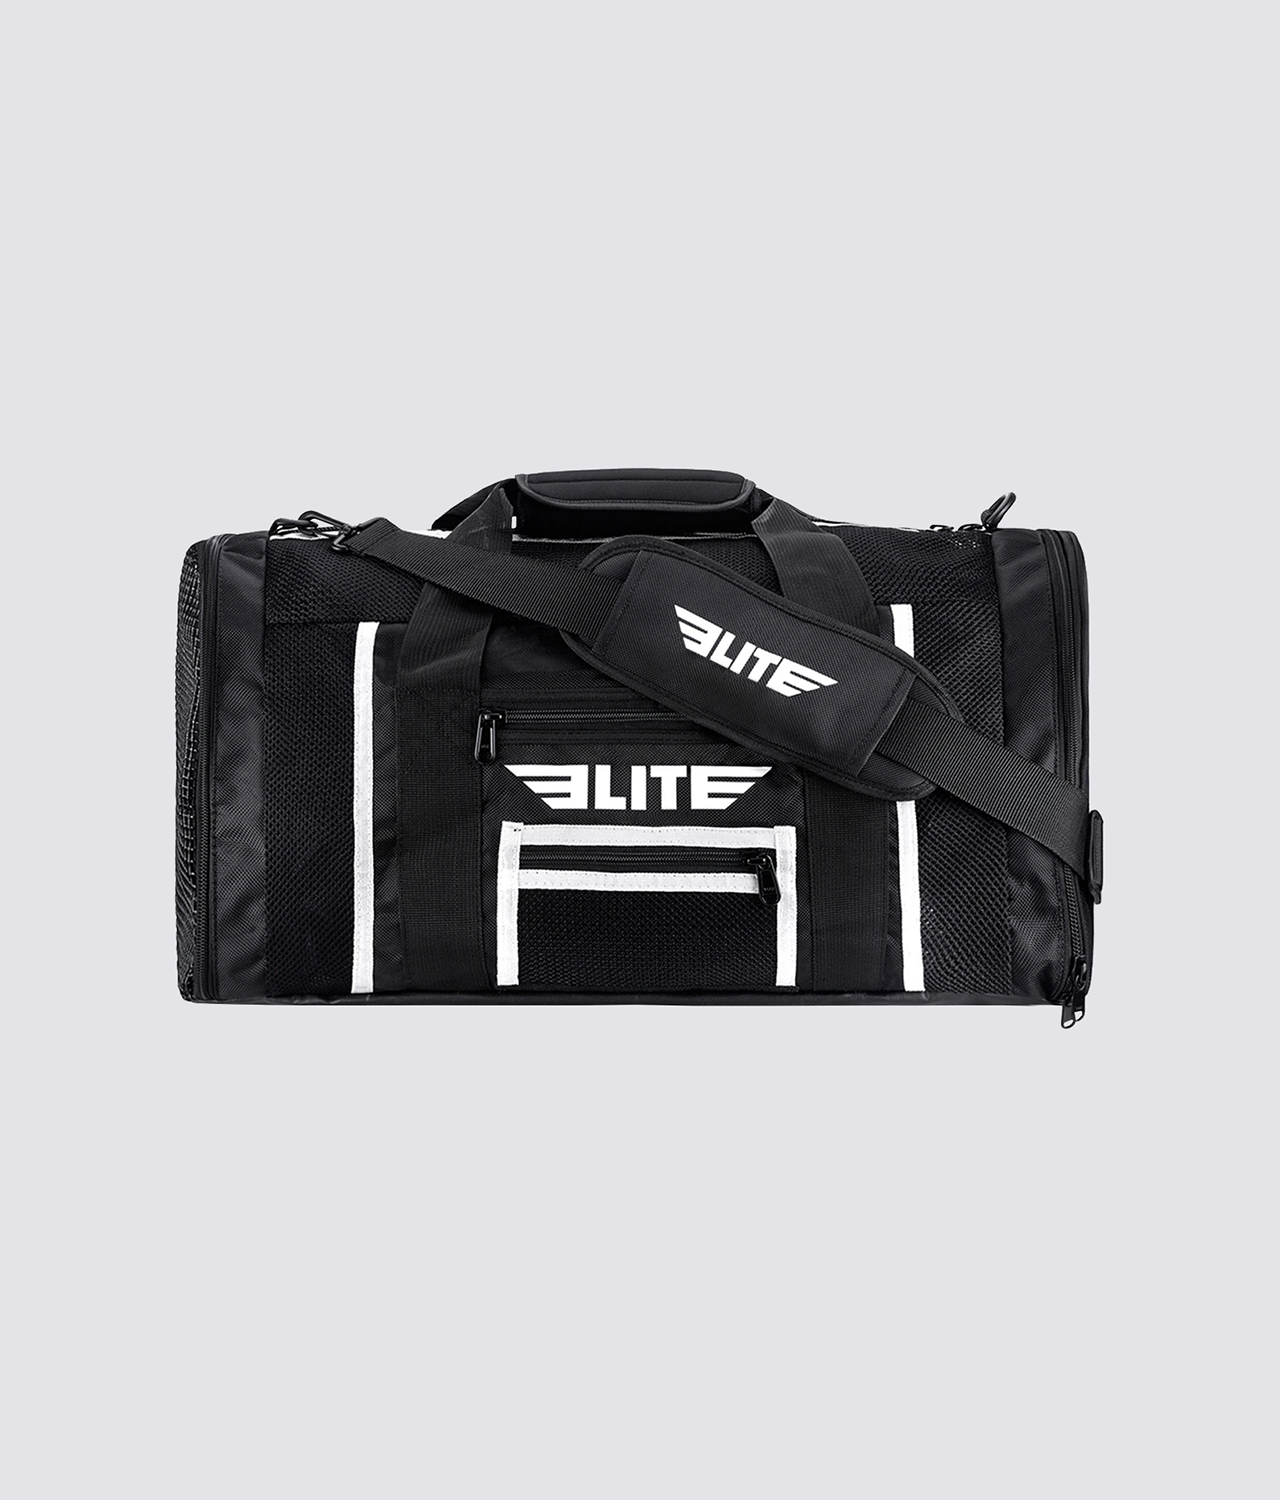 Elite Sports Mesh Black Large Wrestling Gear Gym Bag